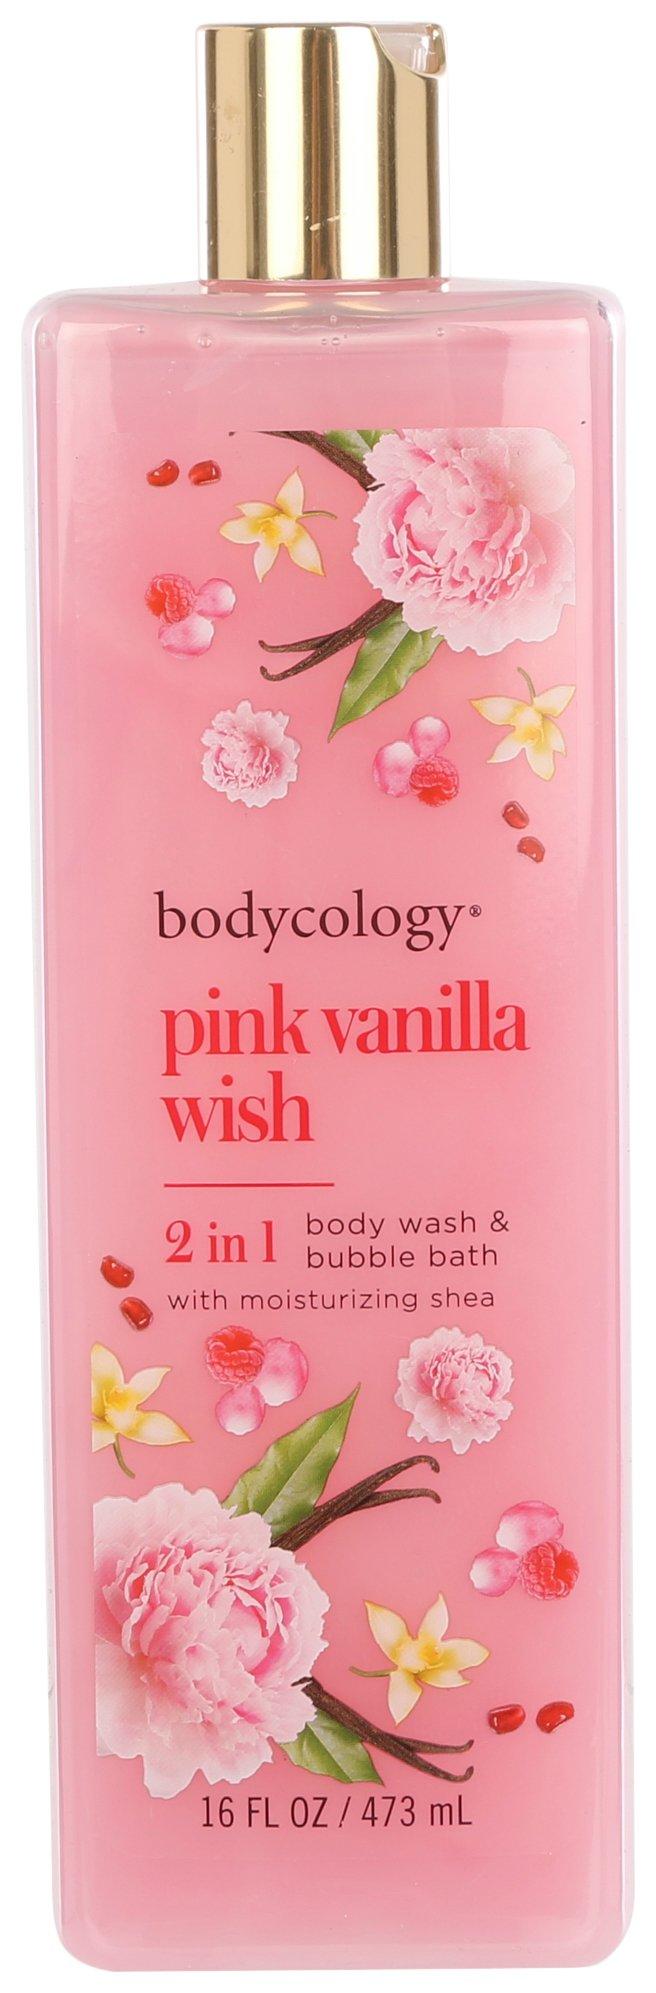 Bodycology Pink Vanilla Wish Body Wash & Bubble